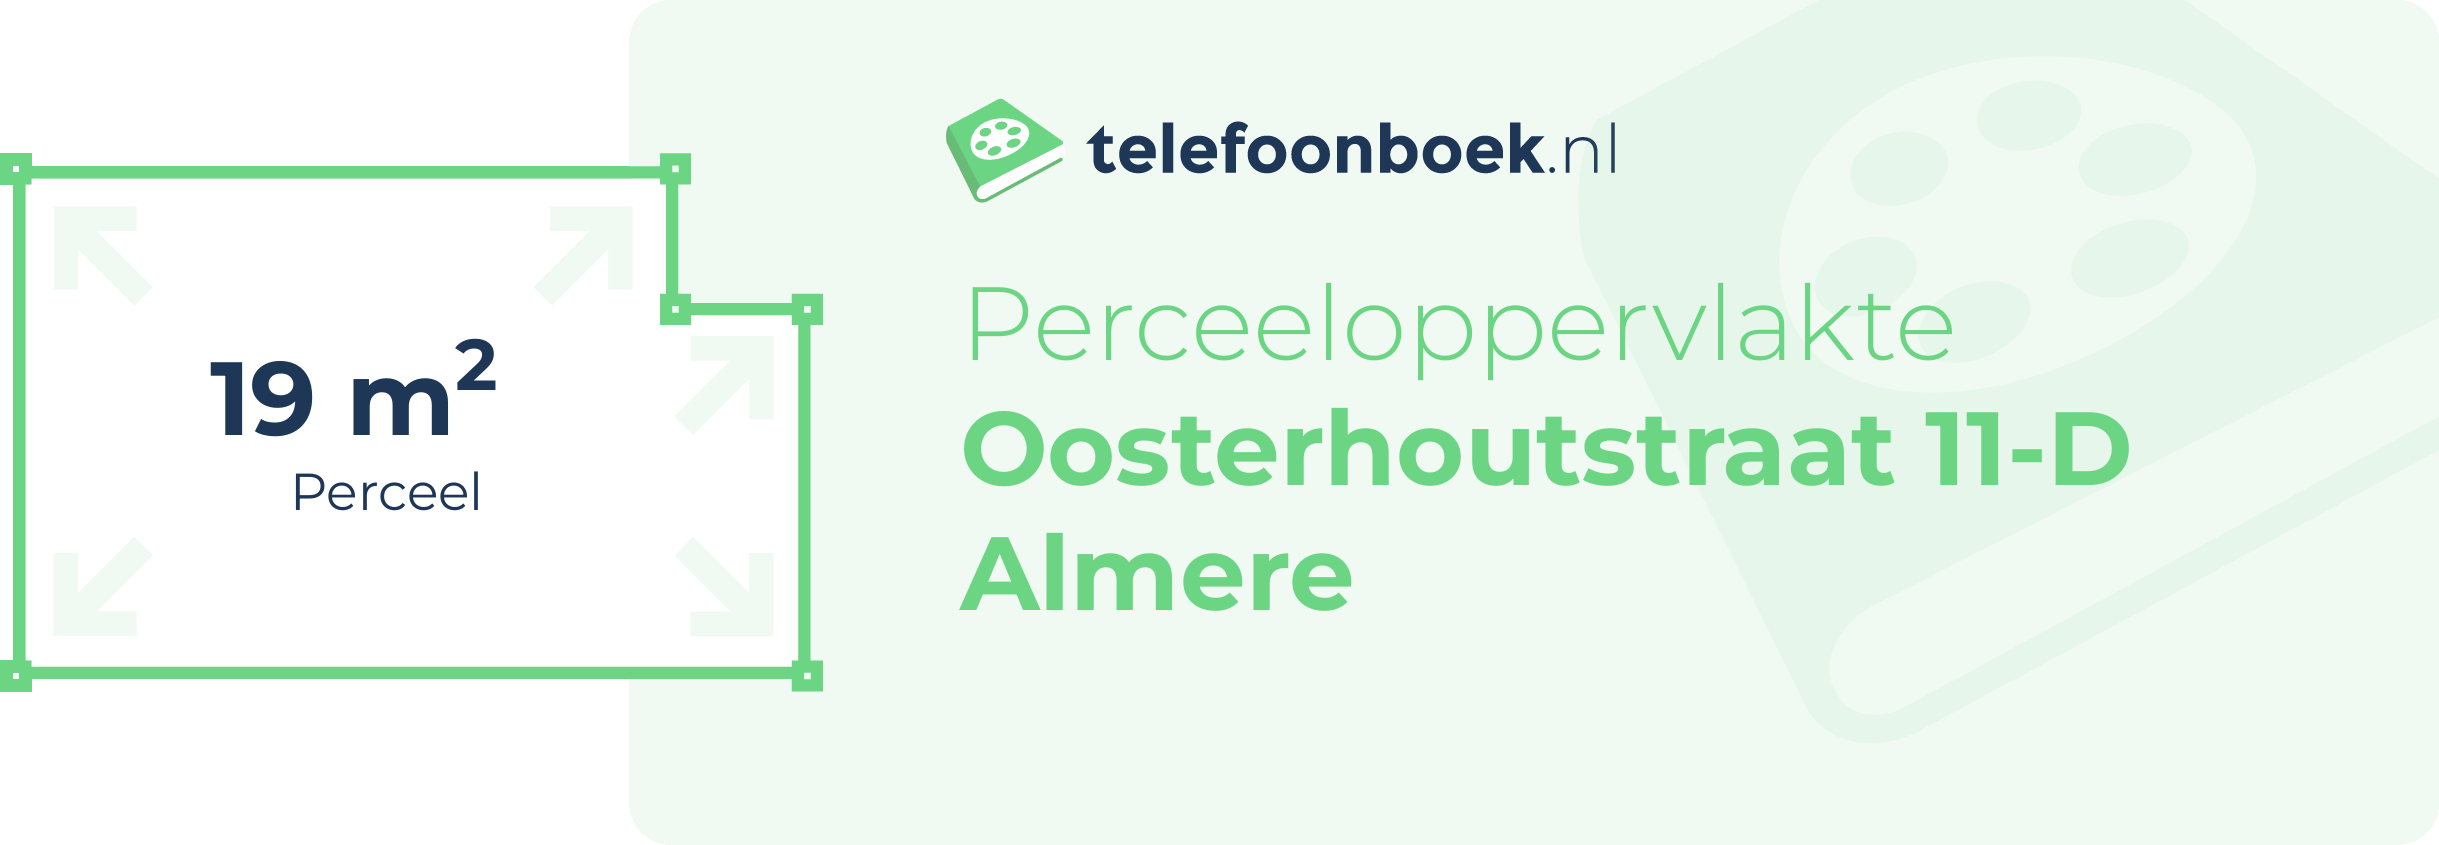 Perceeloppervlakte Oosterhoutstraat 11-D Almere